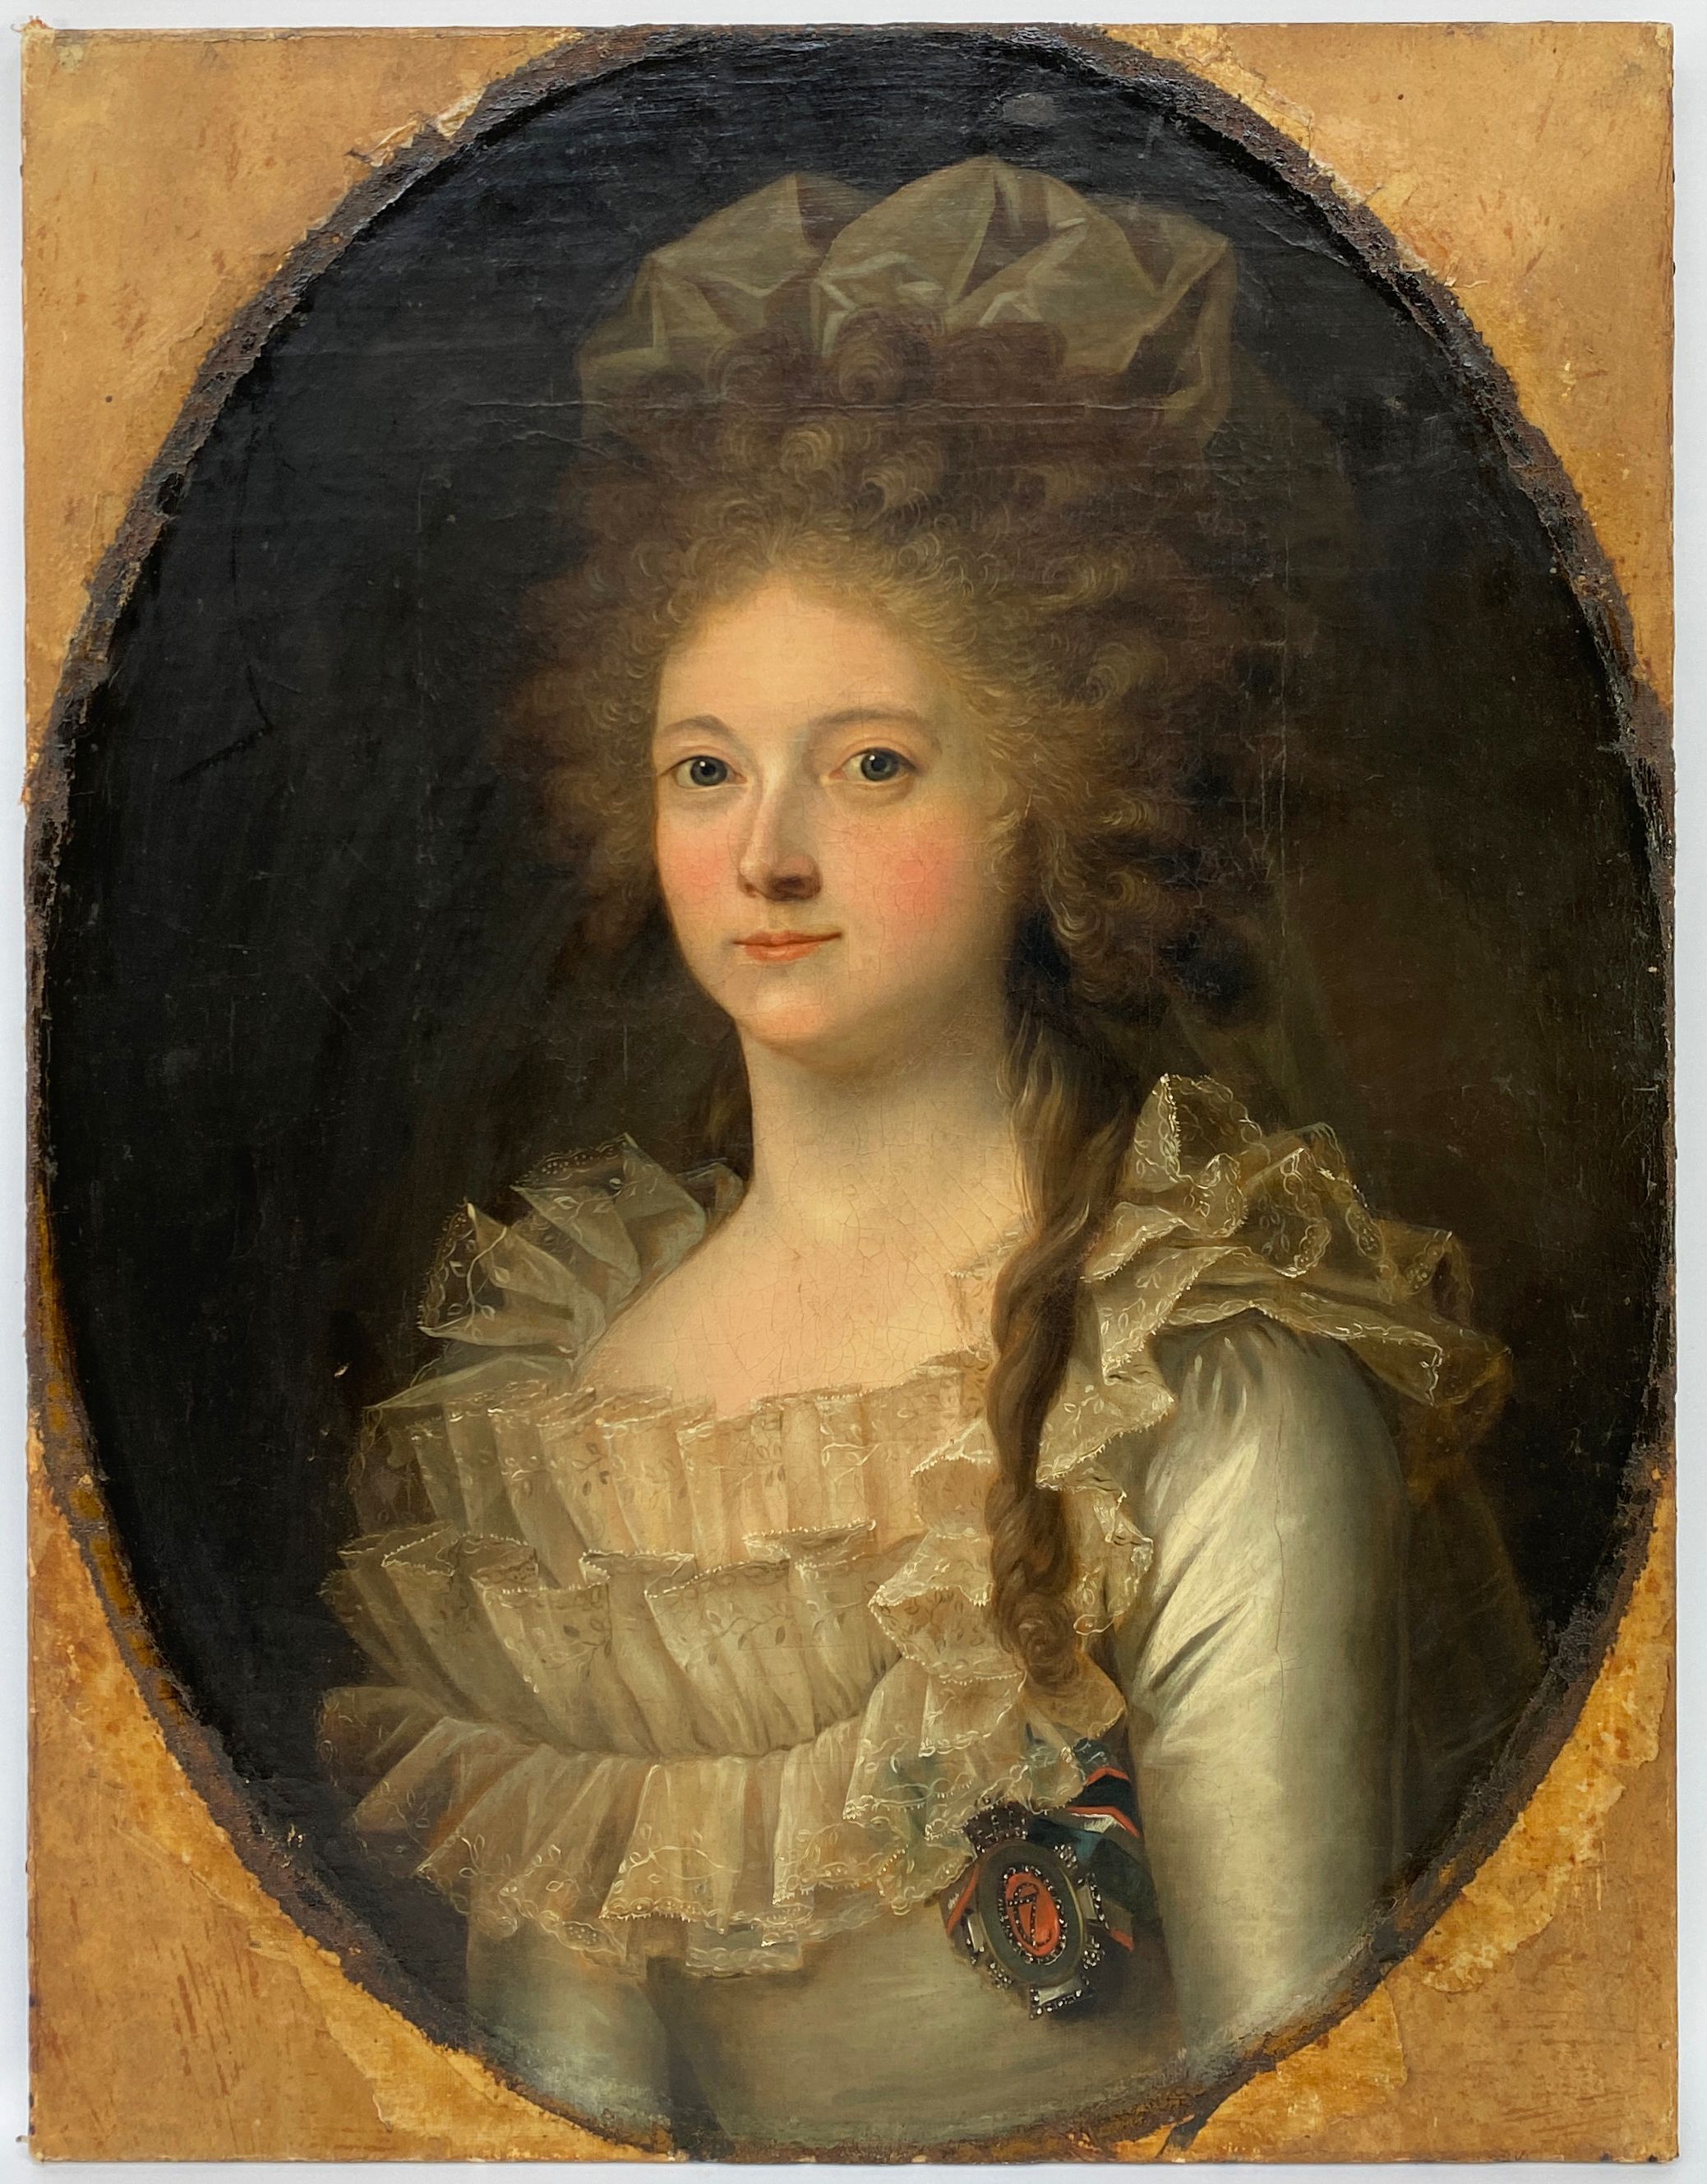 Huile sur toile, tableau ancien représentant une femme noble